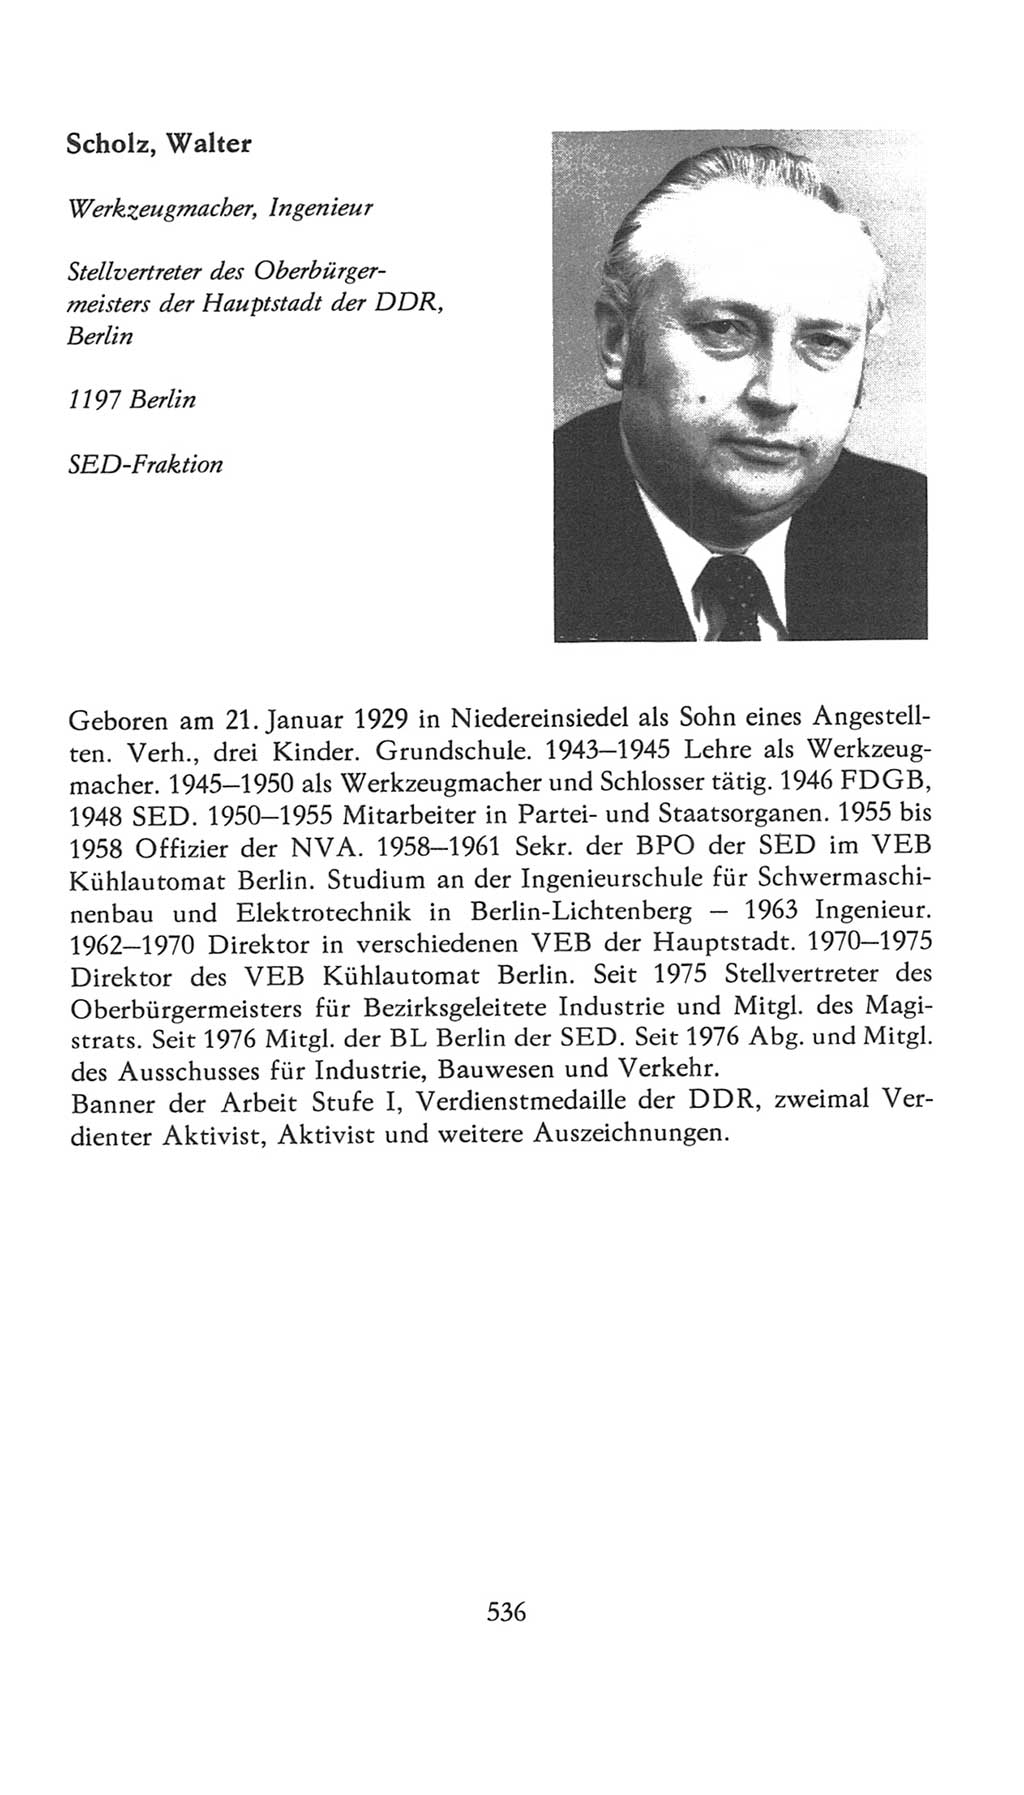 Volkskammer (VK) der Deutschen Demokratischen Republik (DDR), 7. Wahlperiode 1976-1981, Seite 536 (VK. DDR 7. WP. 1976-1981, S. 536)